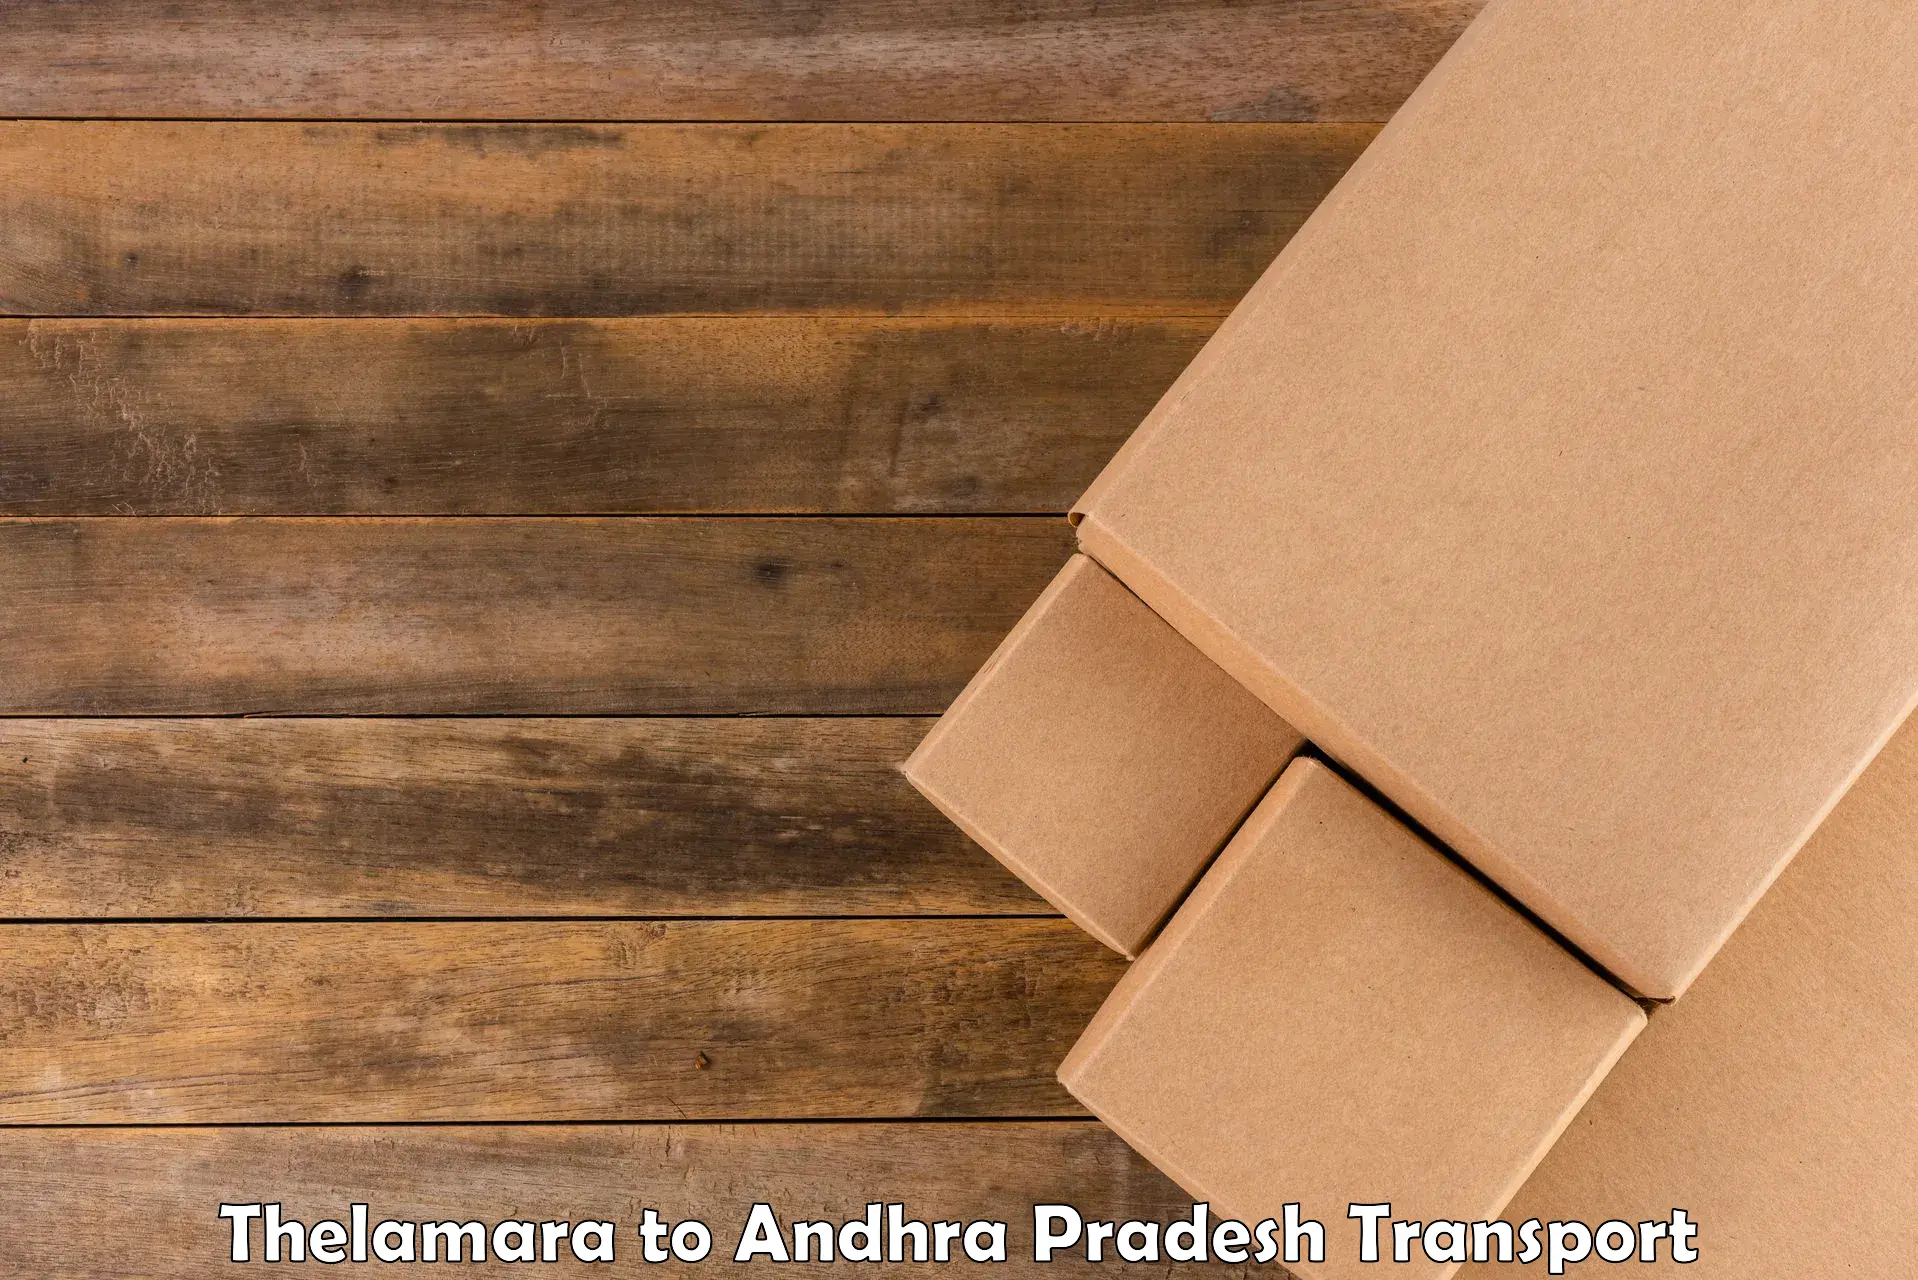 Cargo transportation services Thelamara to Andhra Pradesh